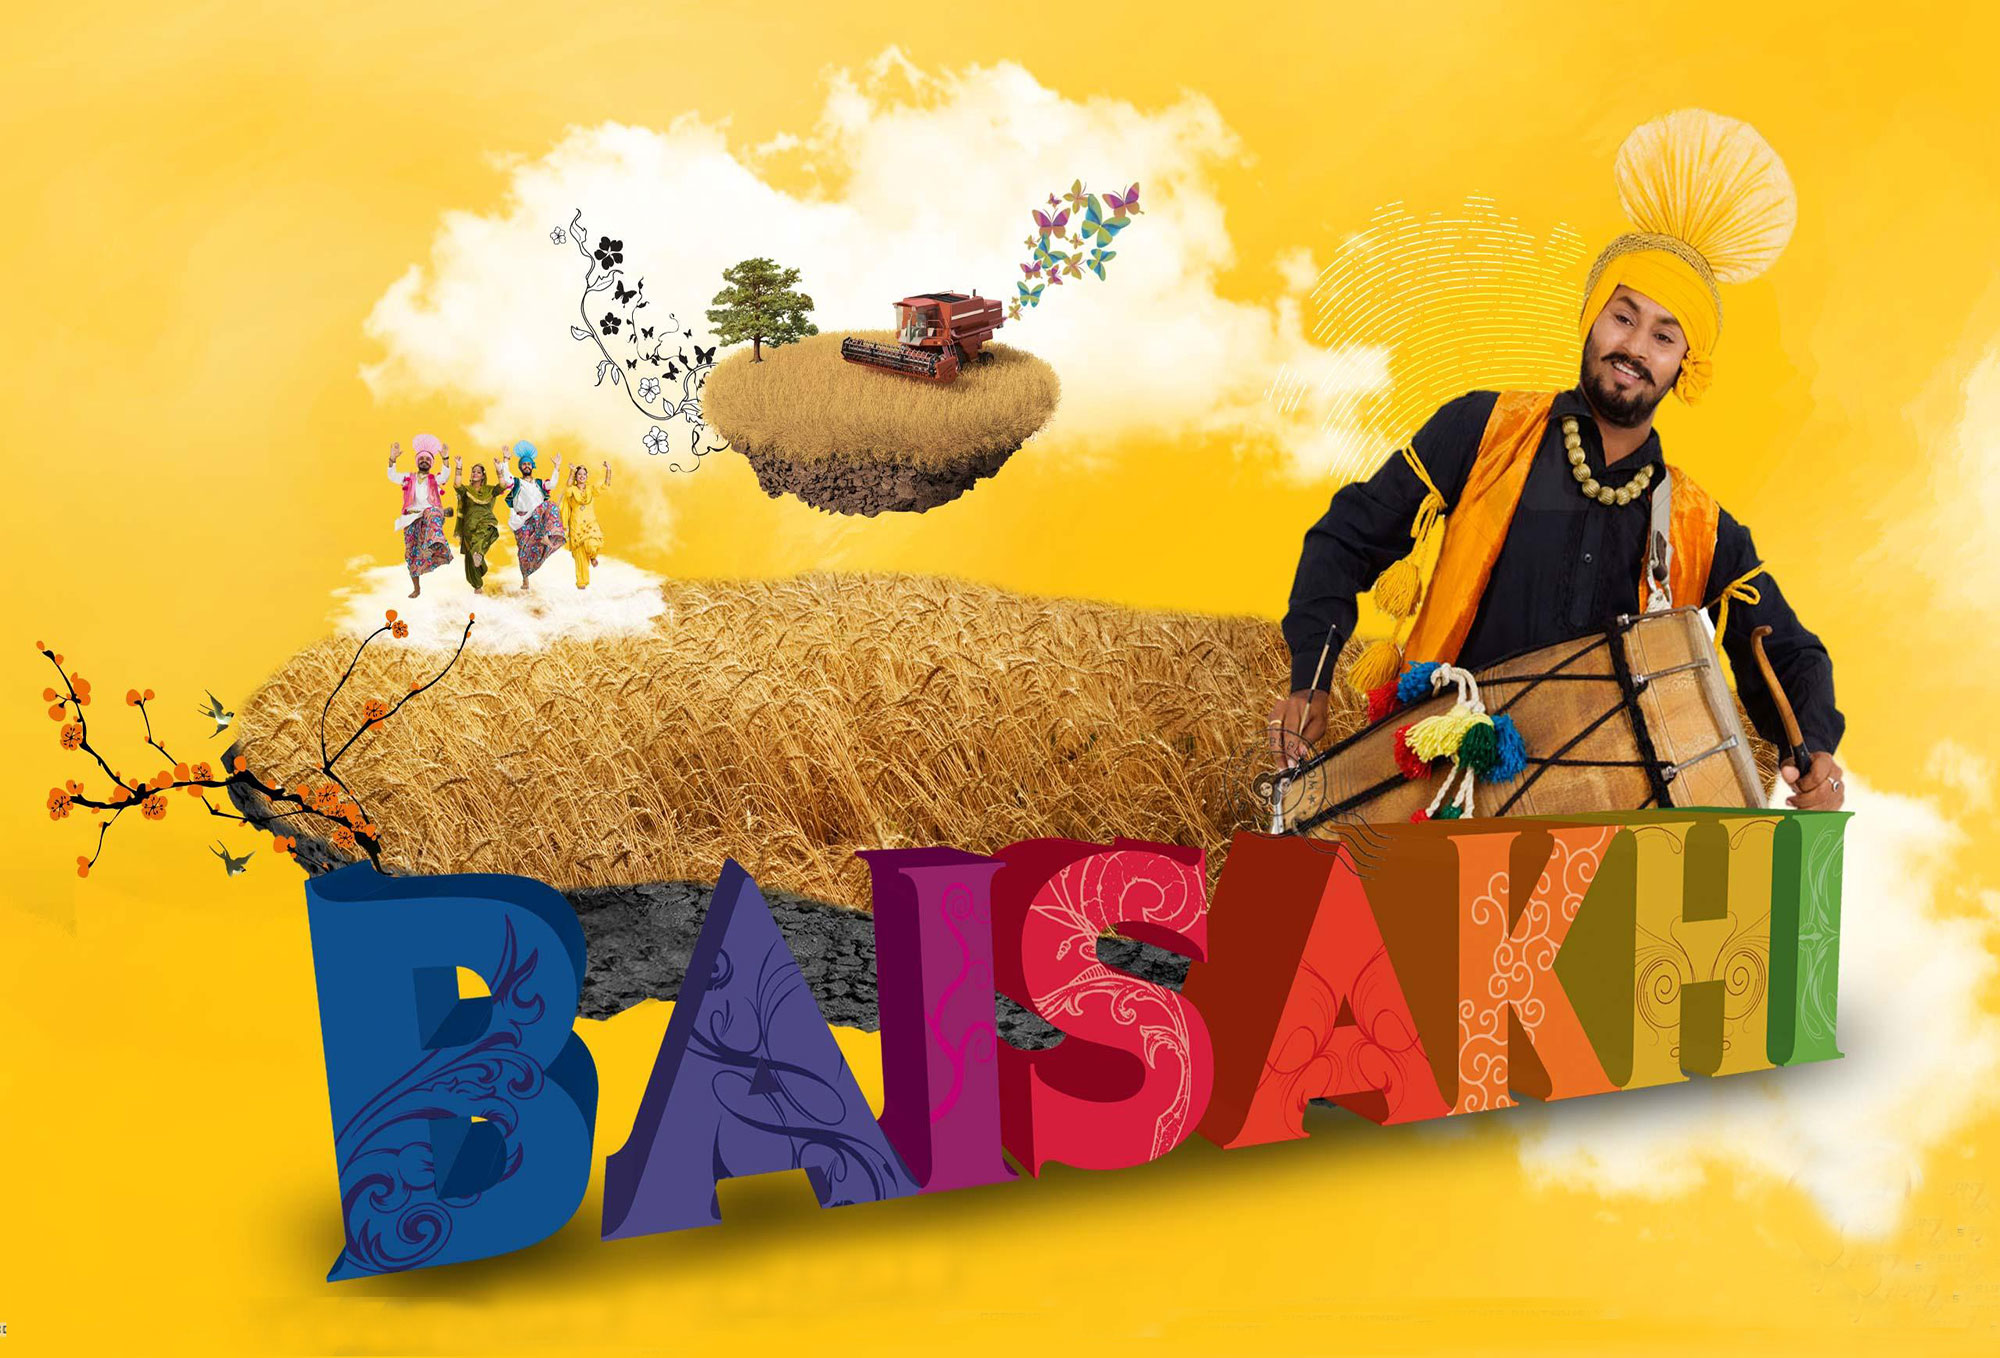 Sikh festivals, history and rituals of Sikh Festival, Sikh festivals